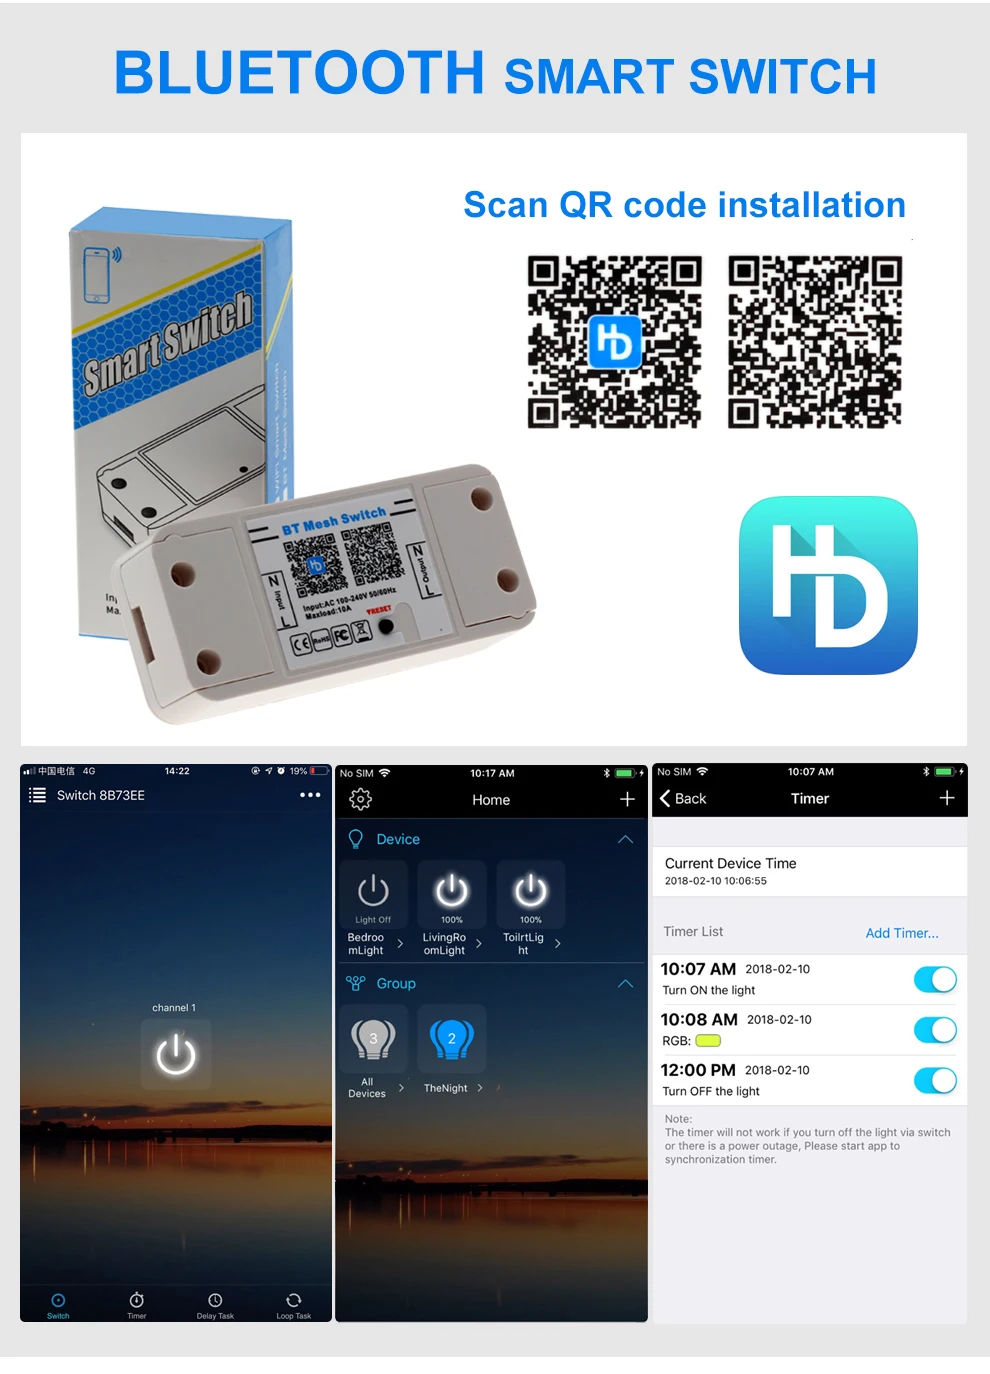 Magic Home умный Bluetooth WiFi переключатель контроллер переменного тока 100-240 В 10 А IOS Android приложение вкл/выкл таймер светодиодный светильник контроллер